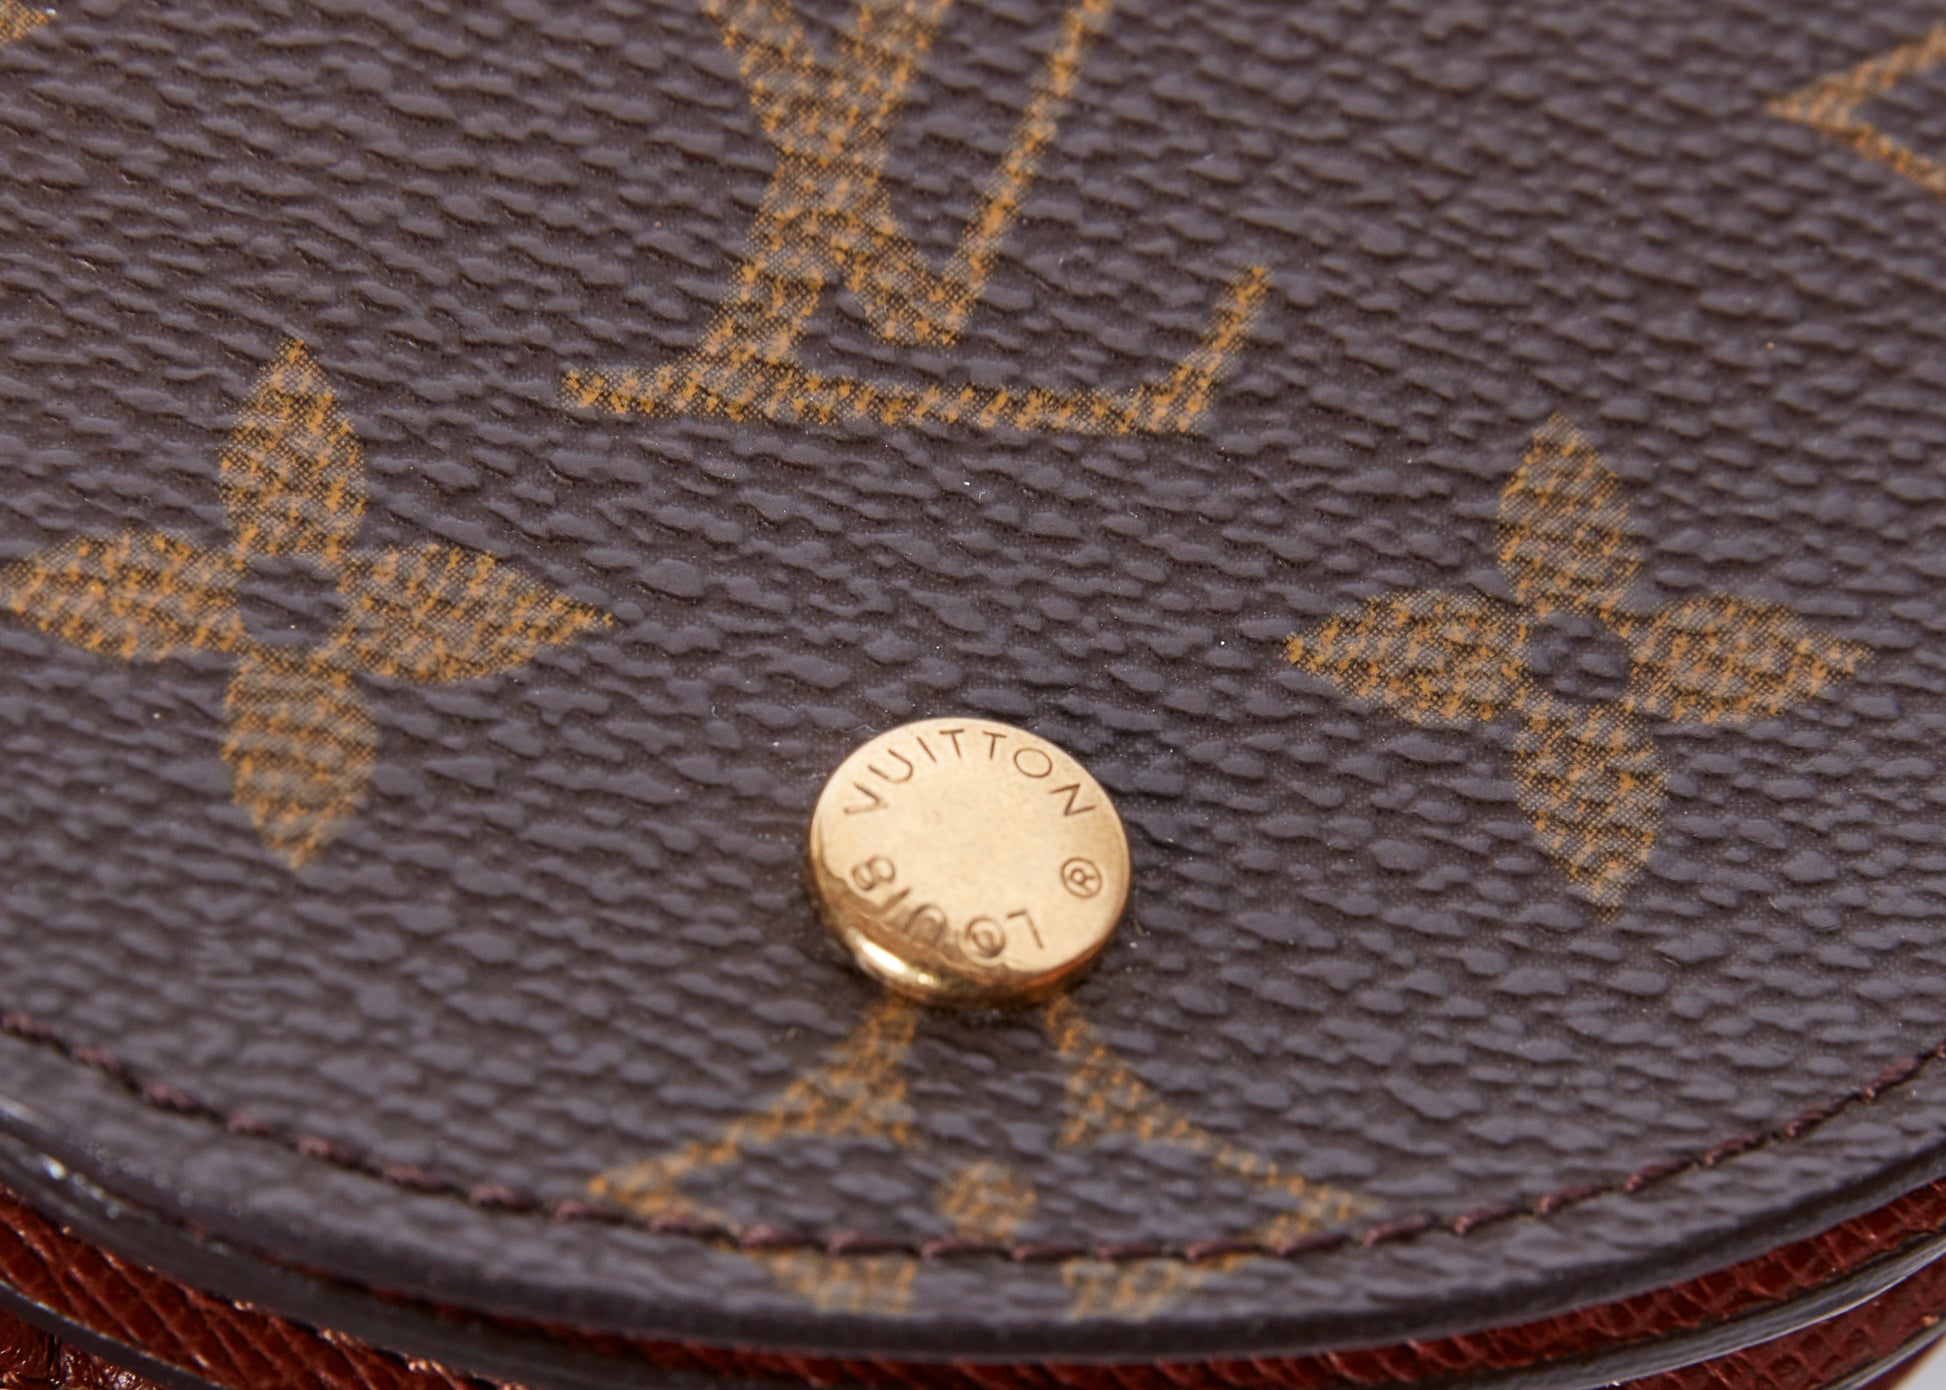 Auth Louis Vuitton Monogram Porte Monnaie Gousset Coin Case M61970